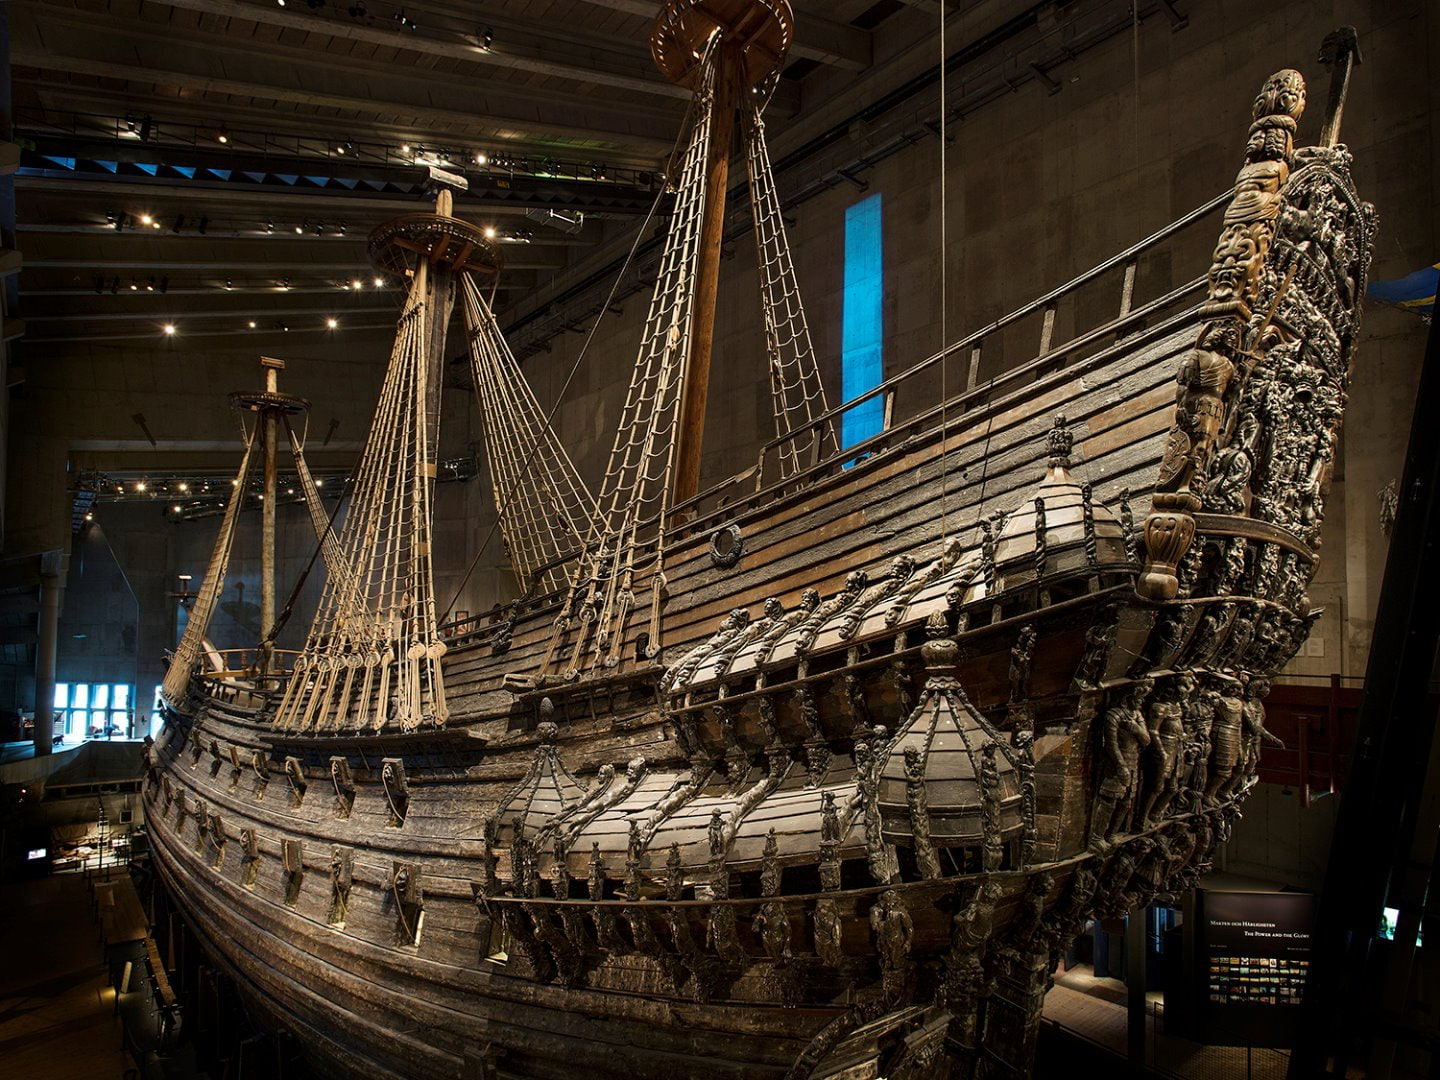 World Wide Vasa &ndash; Vasamuseet kommer till dig 